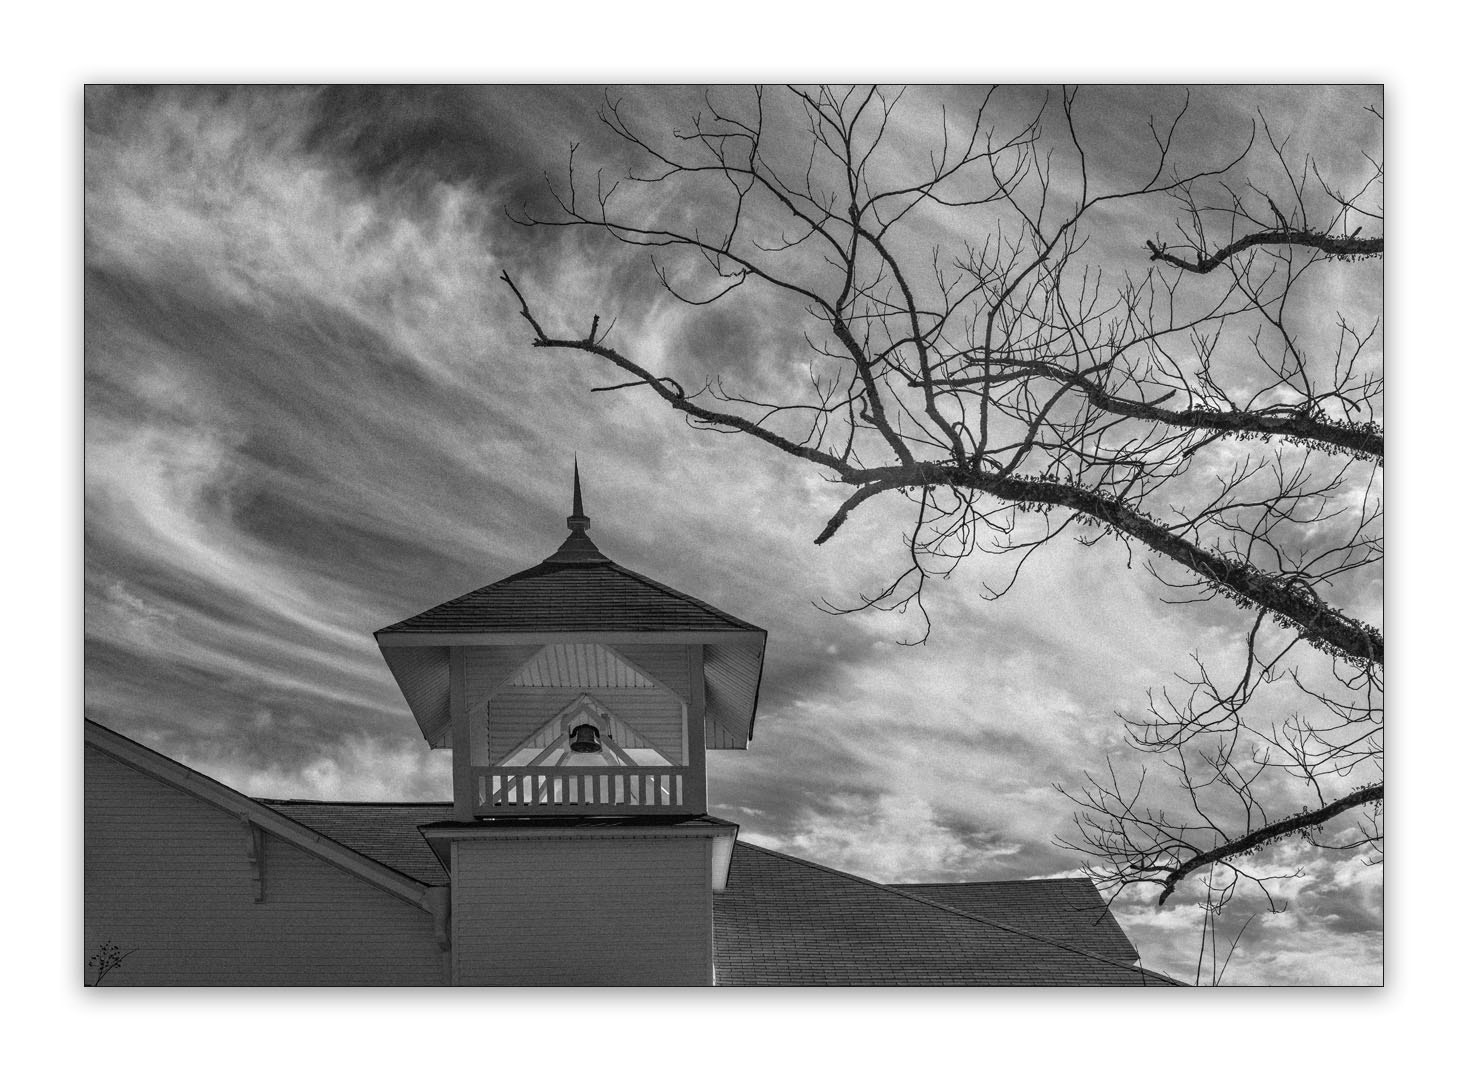 AF Zoom-Nikkor 35-70mm f/2.8D sample photo. Mississippi church photography